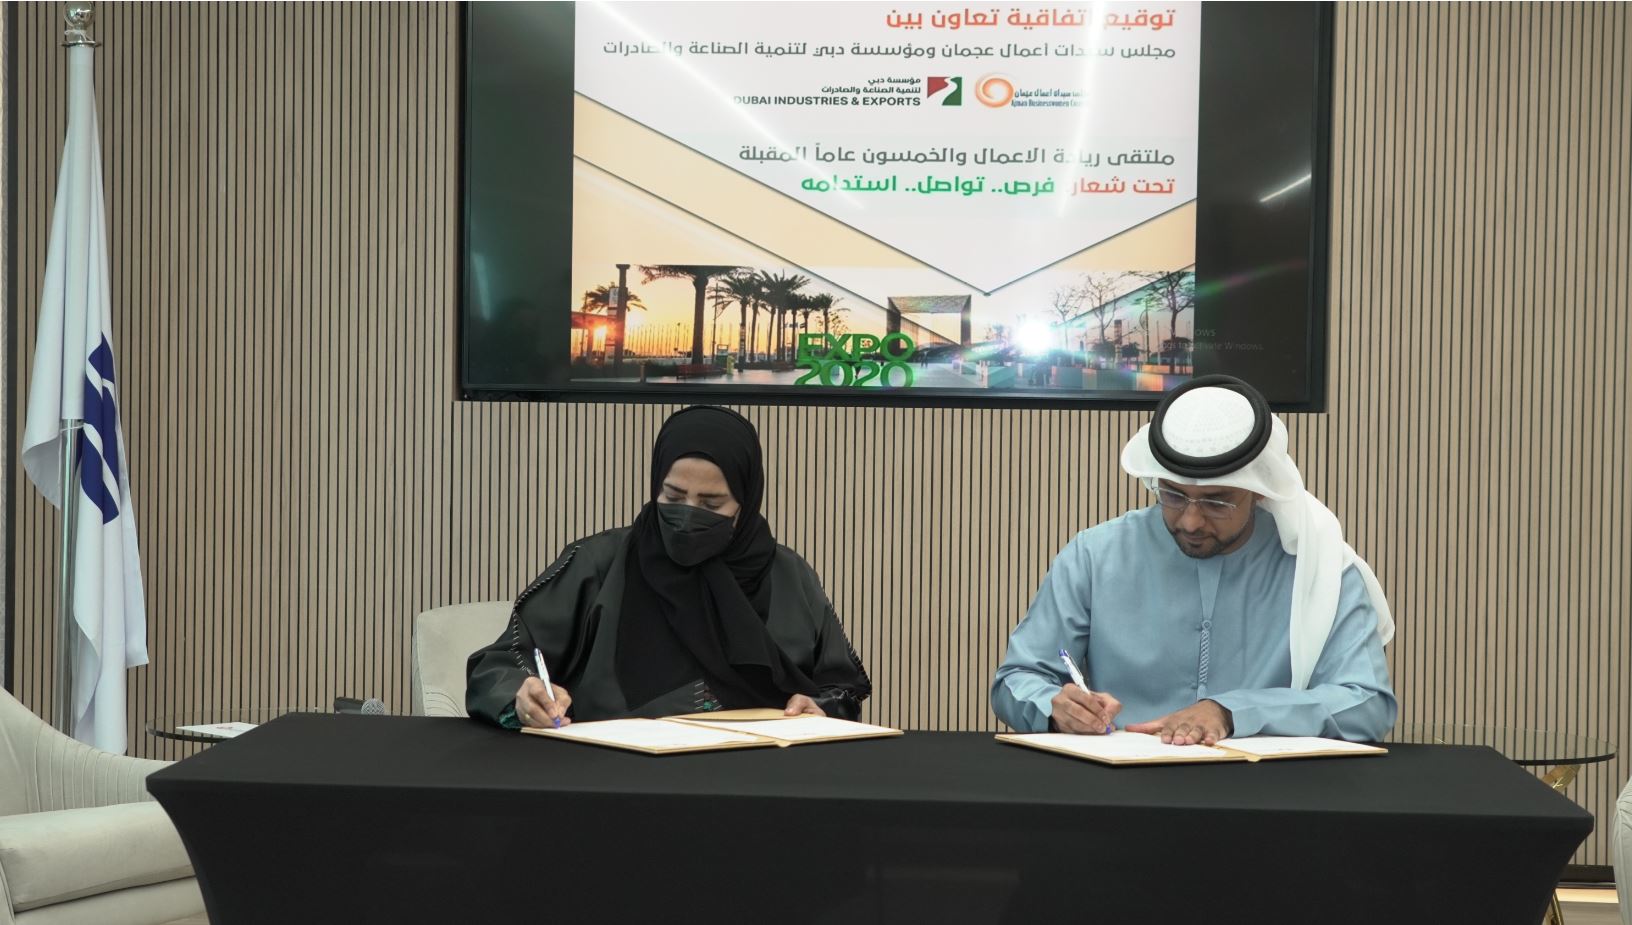 3 إتفاقيات تعاون يوقعها مجلس سيدات أعمال عجمان في إكسبو 2020 دبي